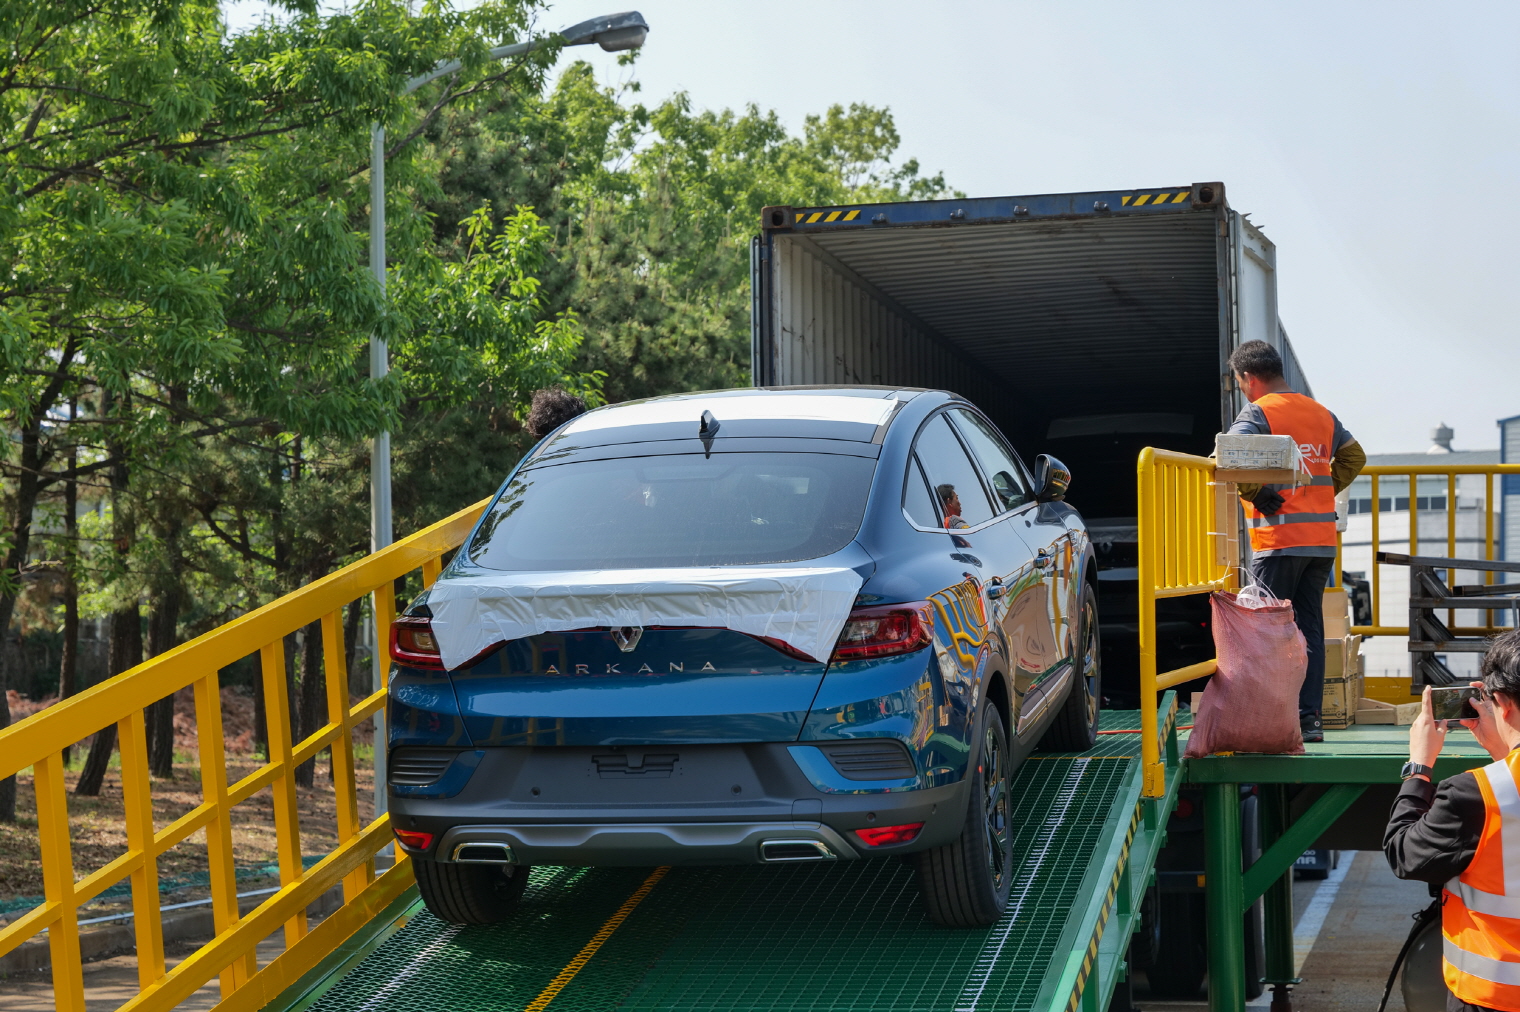 지난 16일 르노코리아자동차 부산공장에서 소형 스포츠유틸리티차(SUV) ‘아르카나’(국내명 XM3)가 수출용 컨테이너에 실리고 있다. 르노코리아자동차 제공